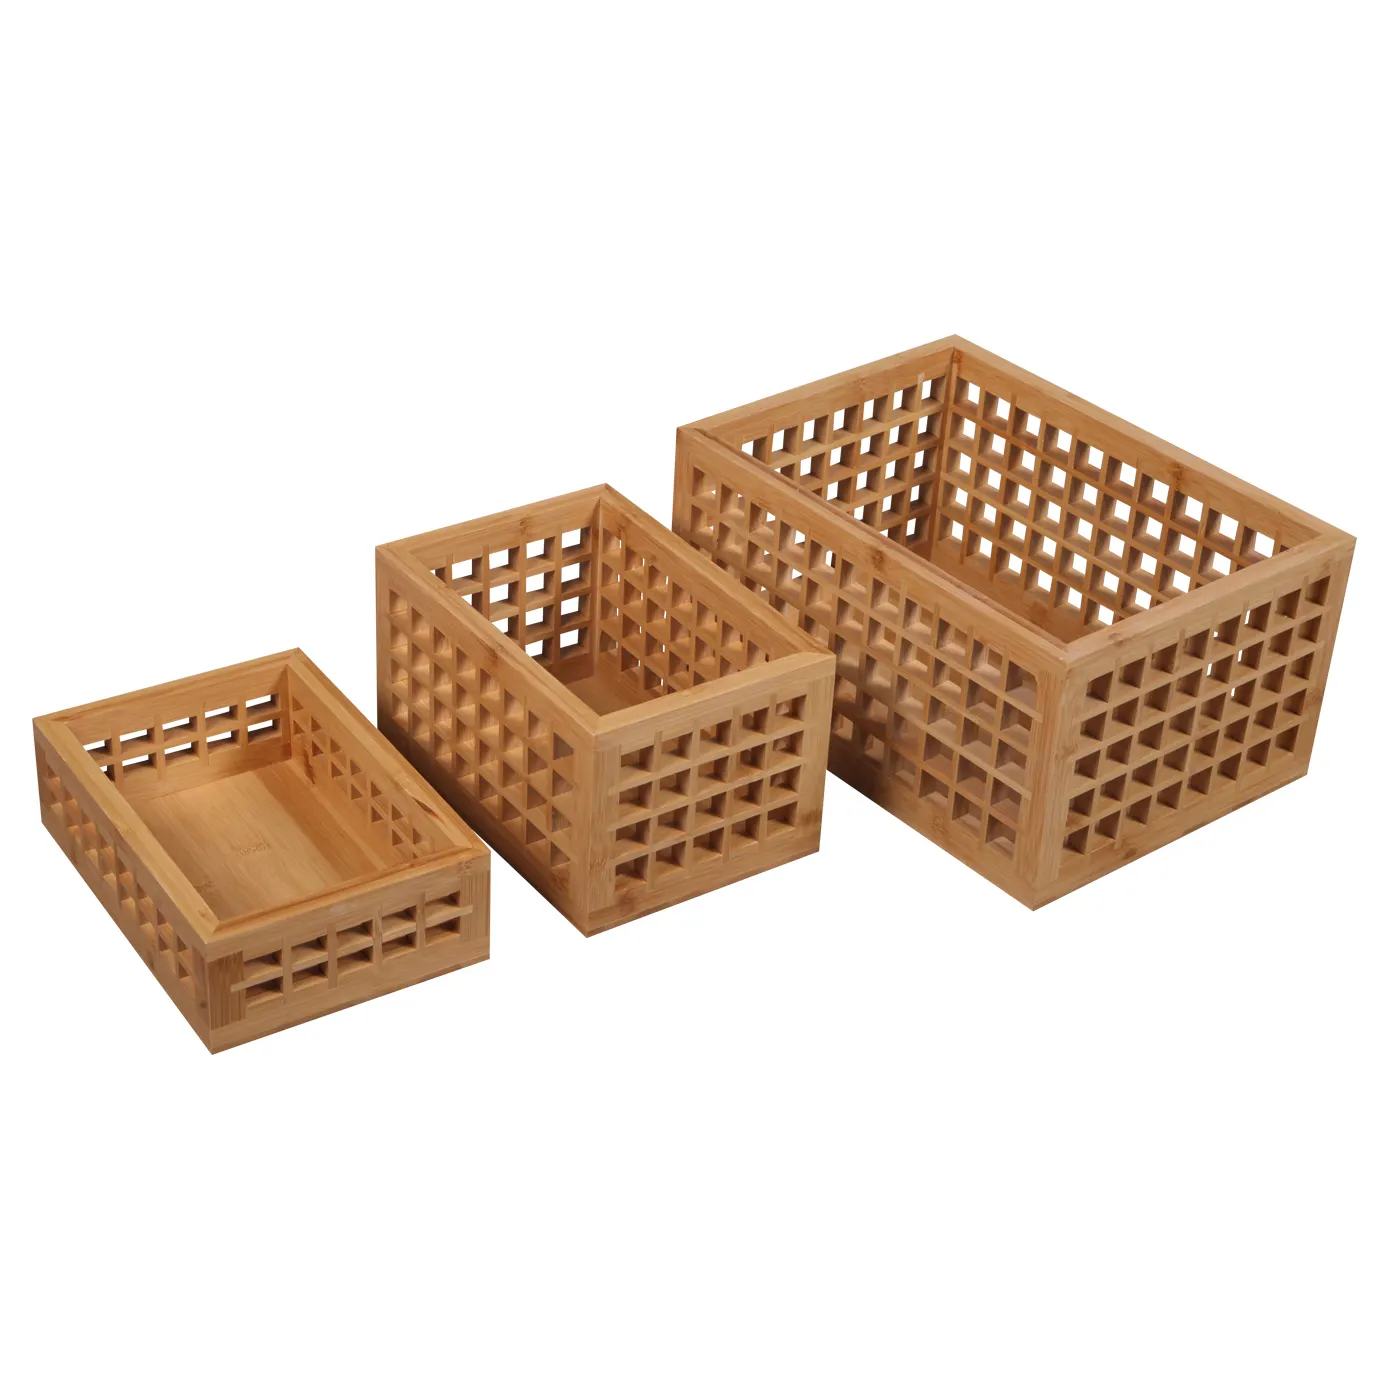 BSCI fabbrica all'ingrosso lattice di legno pieghevole giocattoli libri cassa di immagazzinaggio della frutta con fodera in cotone